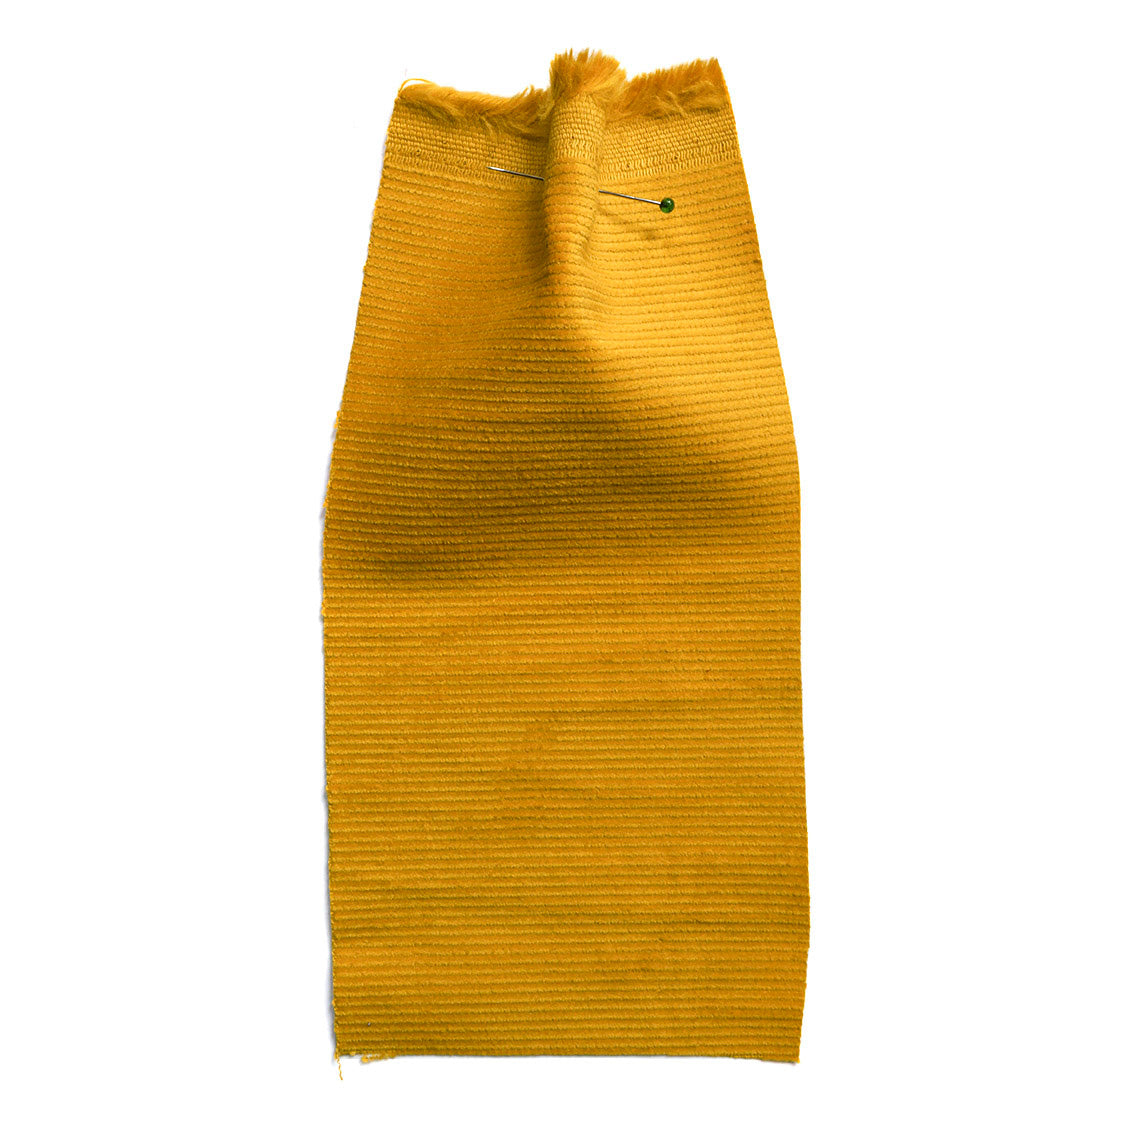 Kodo Corduroy Yellow • Cloth House